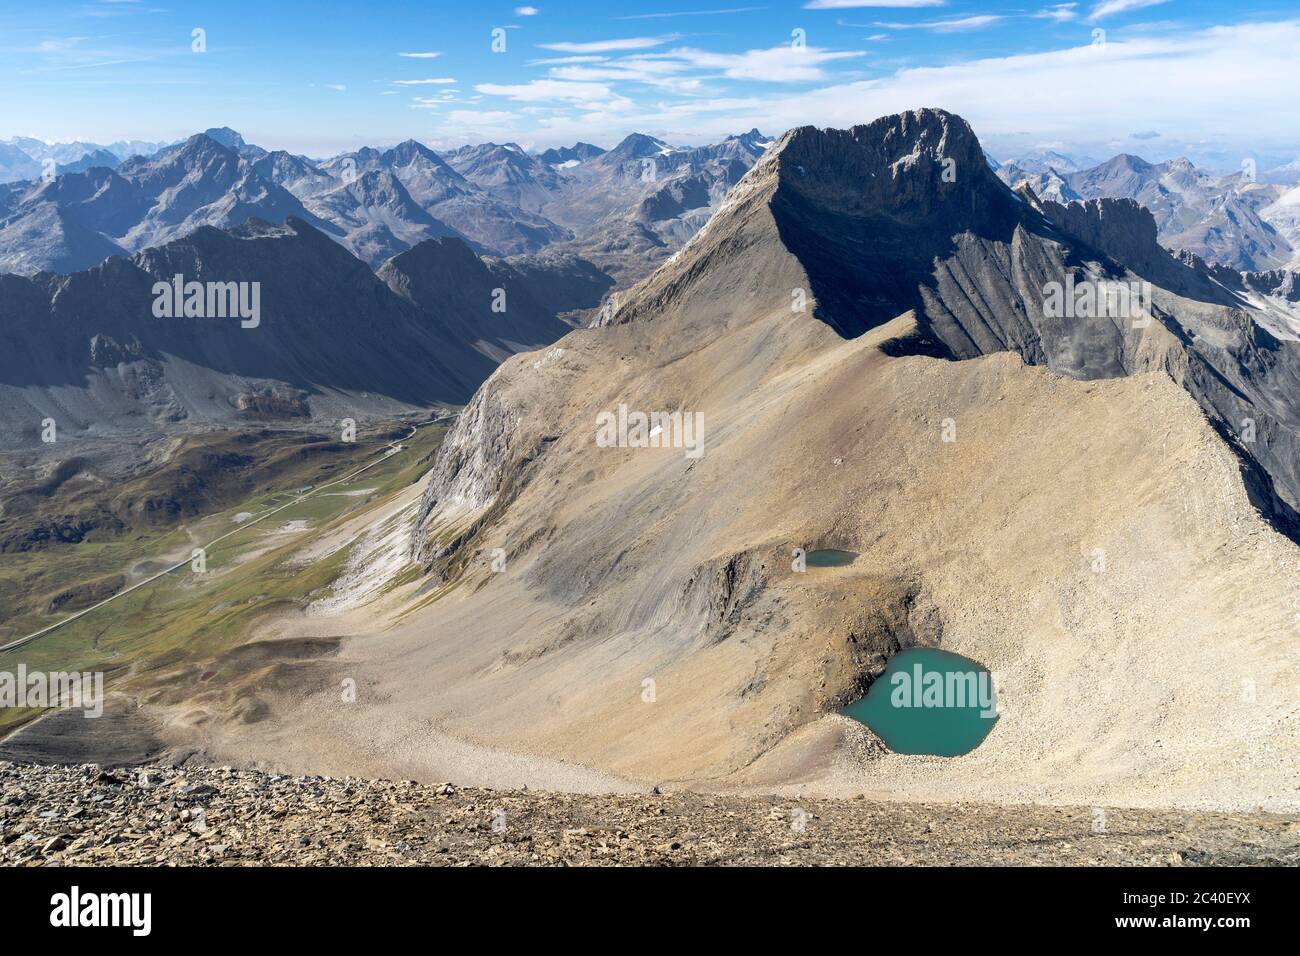 Der Piz Üertsch (Gipfel aus Dolomit-Gestein). Sicht vom Piz Blaisun (Kalk). Namenlose visto. Links unten der albulapass, Graubünden. Ganz klein ist das Foto Stock